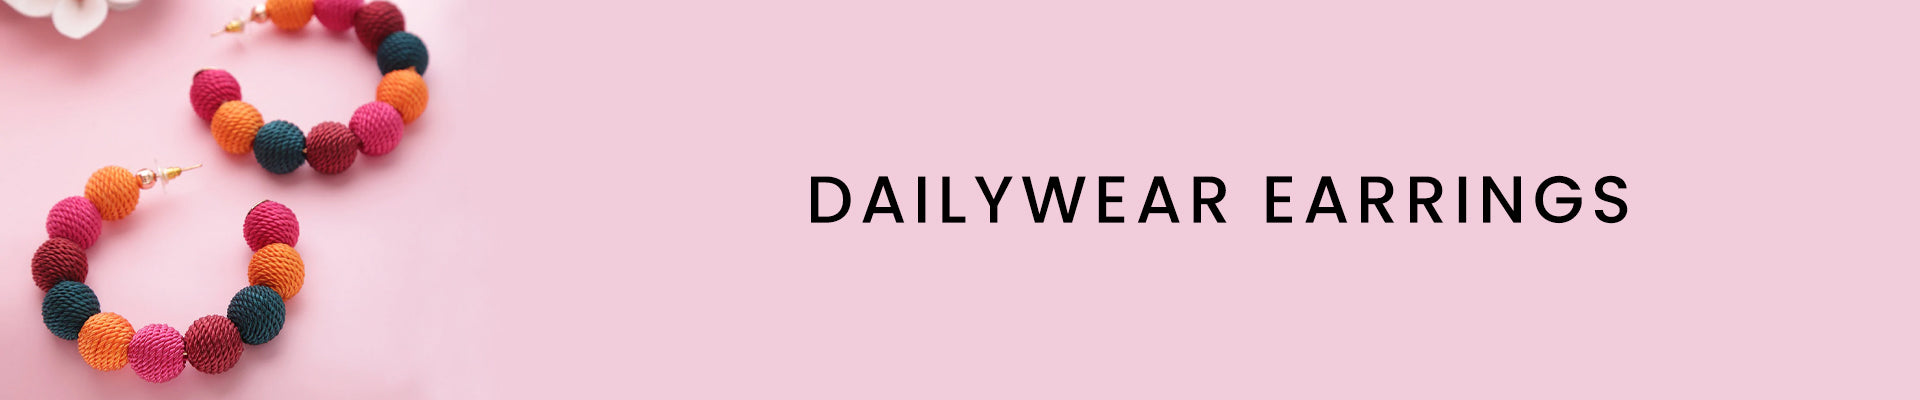 Daily Wear Earrings